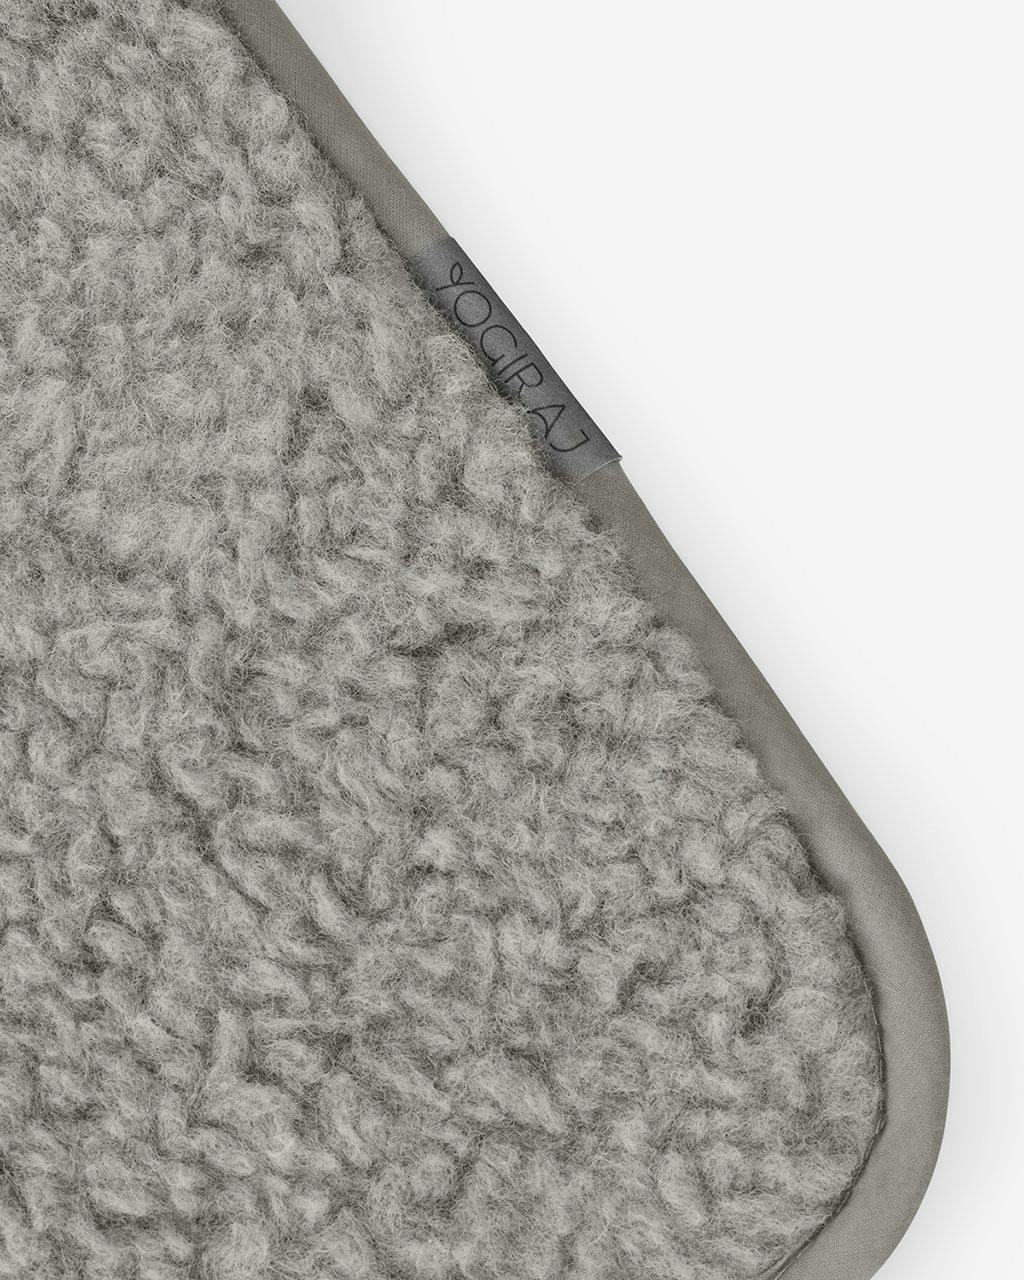 Yogamatta ull Premium wool mat, 75 x 200 cm - Yogiraj